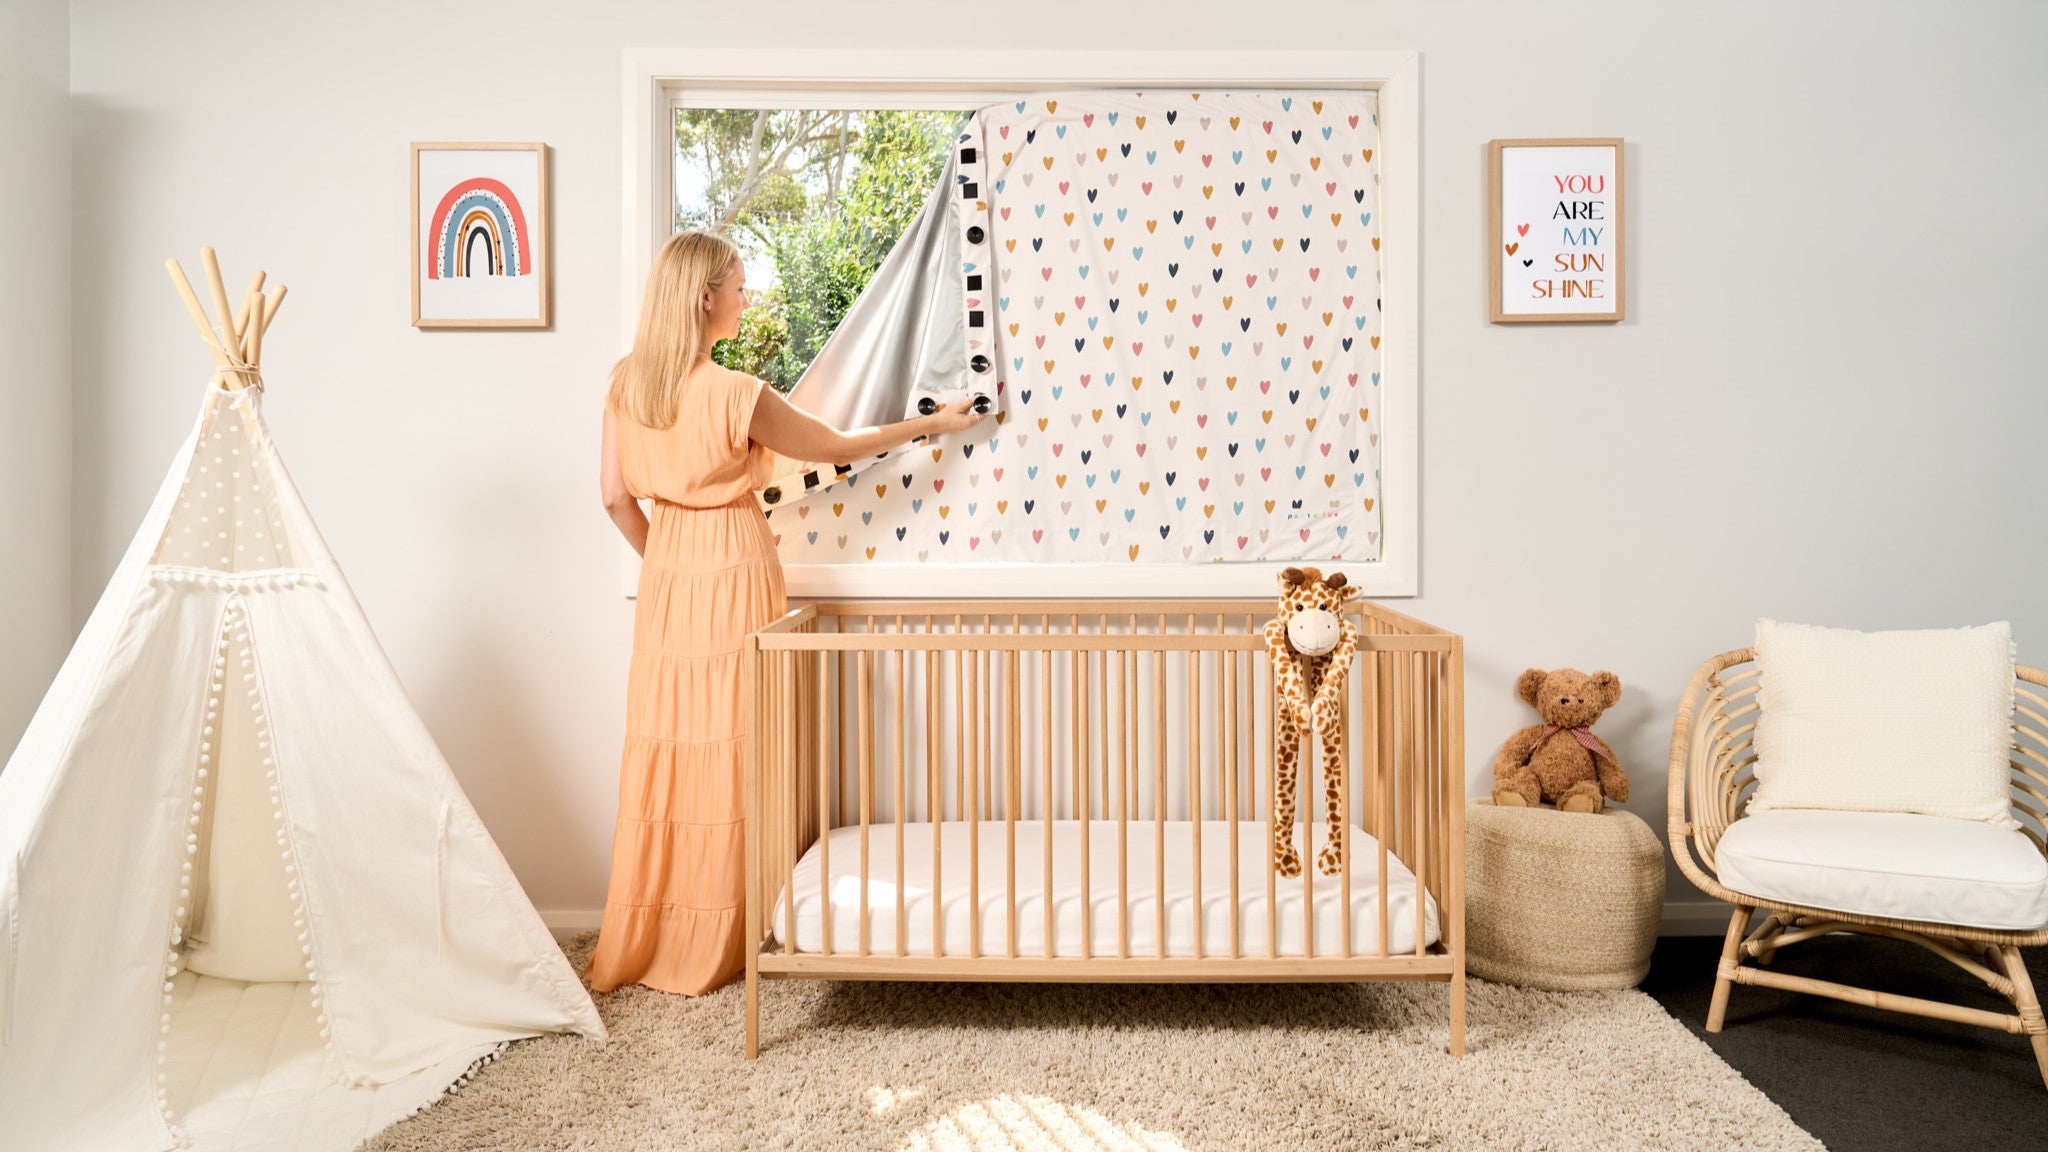 light blocking blinds for baby nursery